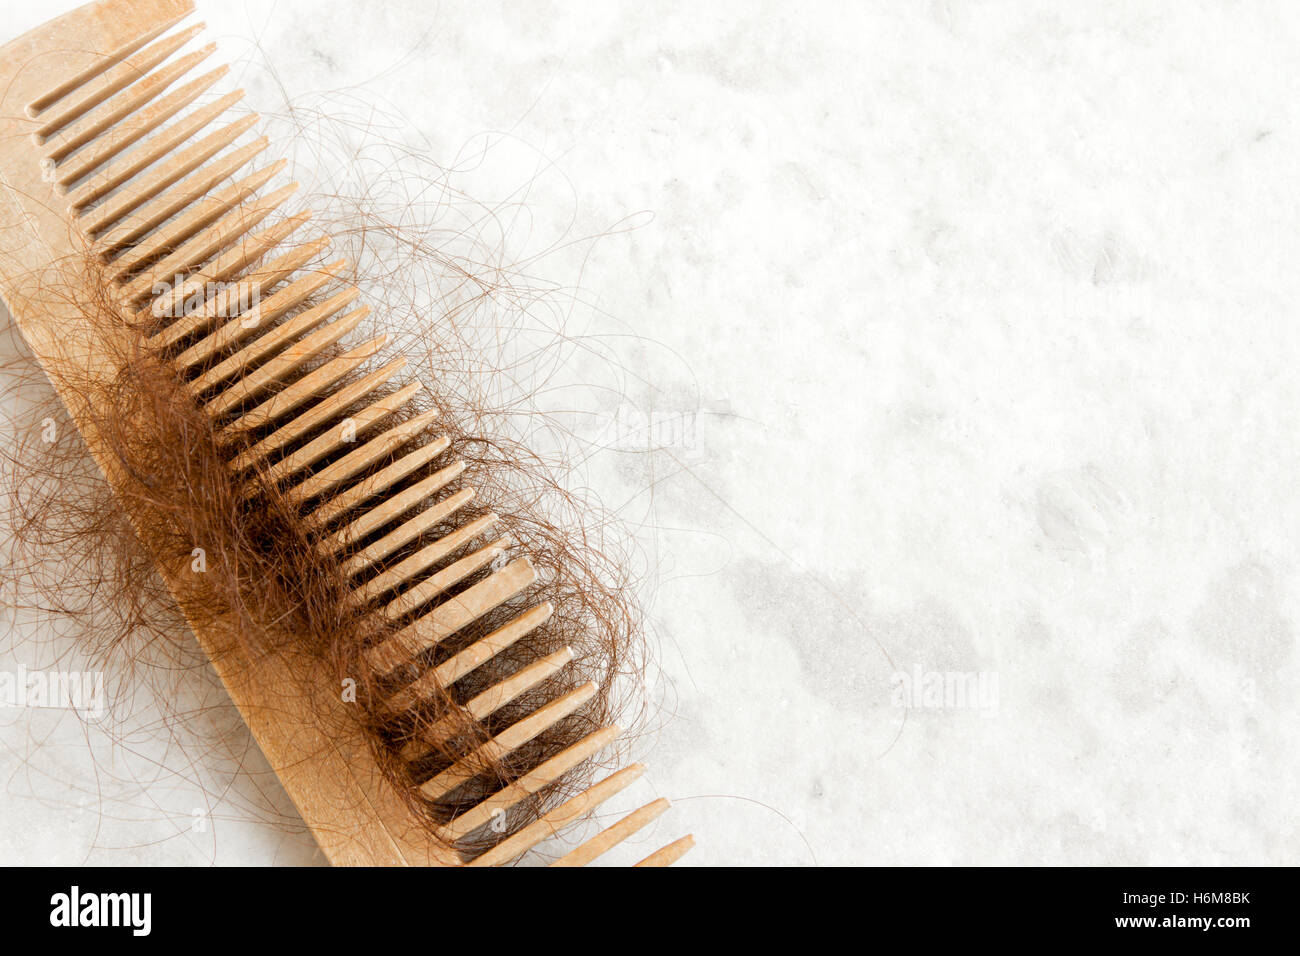 Haare auf hölzernen Kamm close up - Haar-Verlust-Problem-Konzept Stockfoto